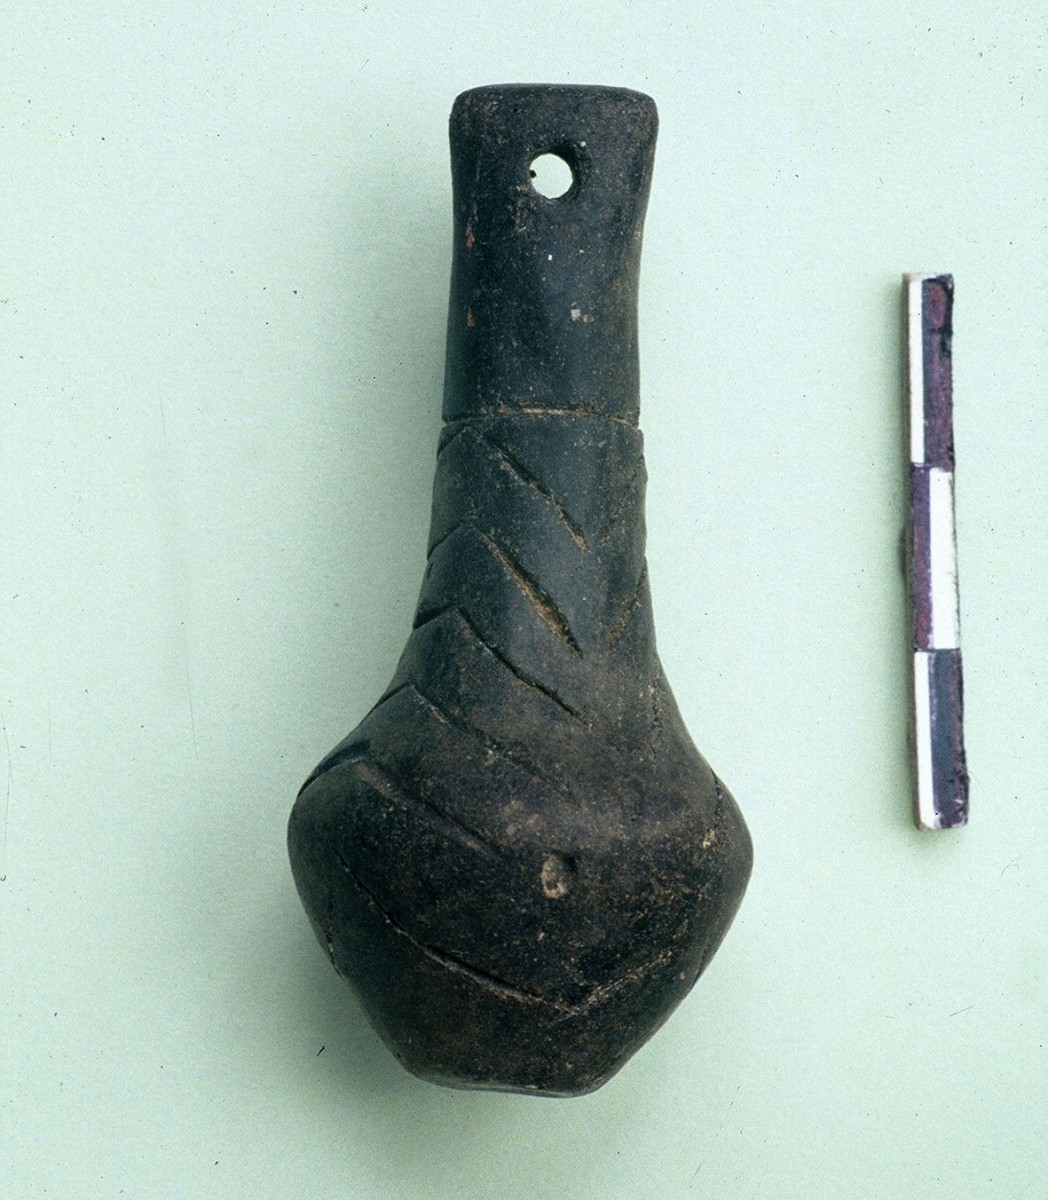 Εικ. 40. Λίθινο περίαπτο-ειδώλιο, επίσης βαλκανικού τύπου, γνωστό από τον πολιτισμό Maliq II της Αλβανίας. Χαλκολιθική περίοδος.